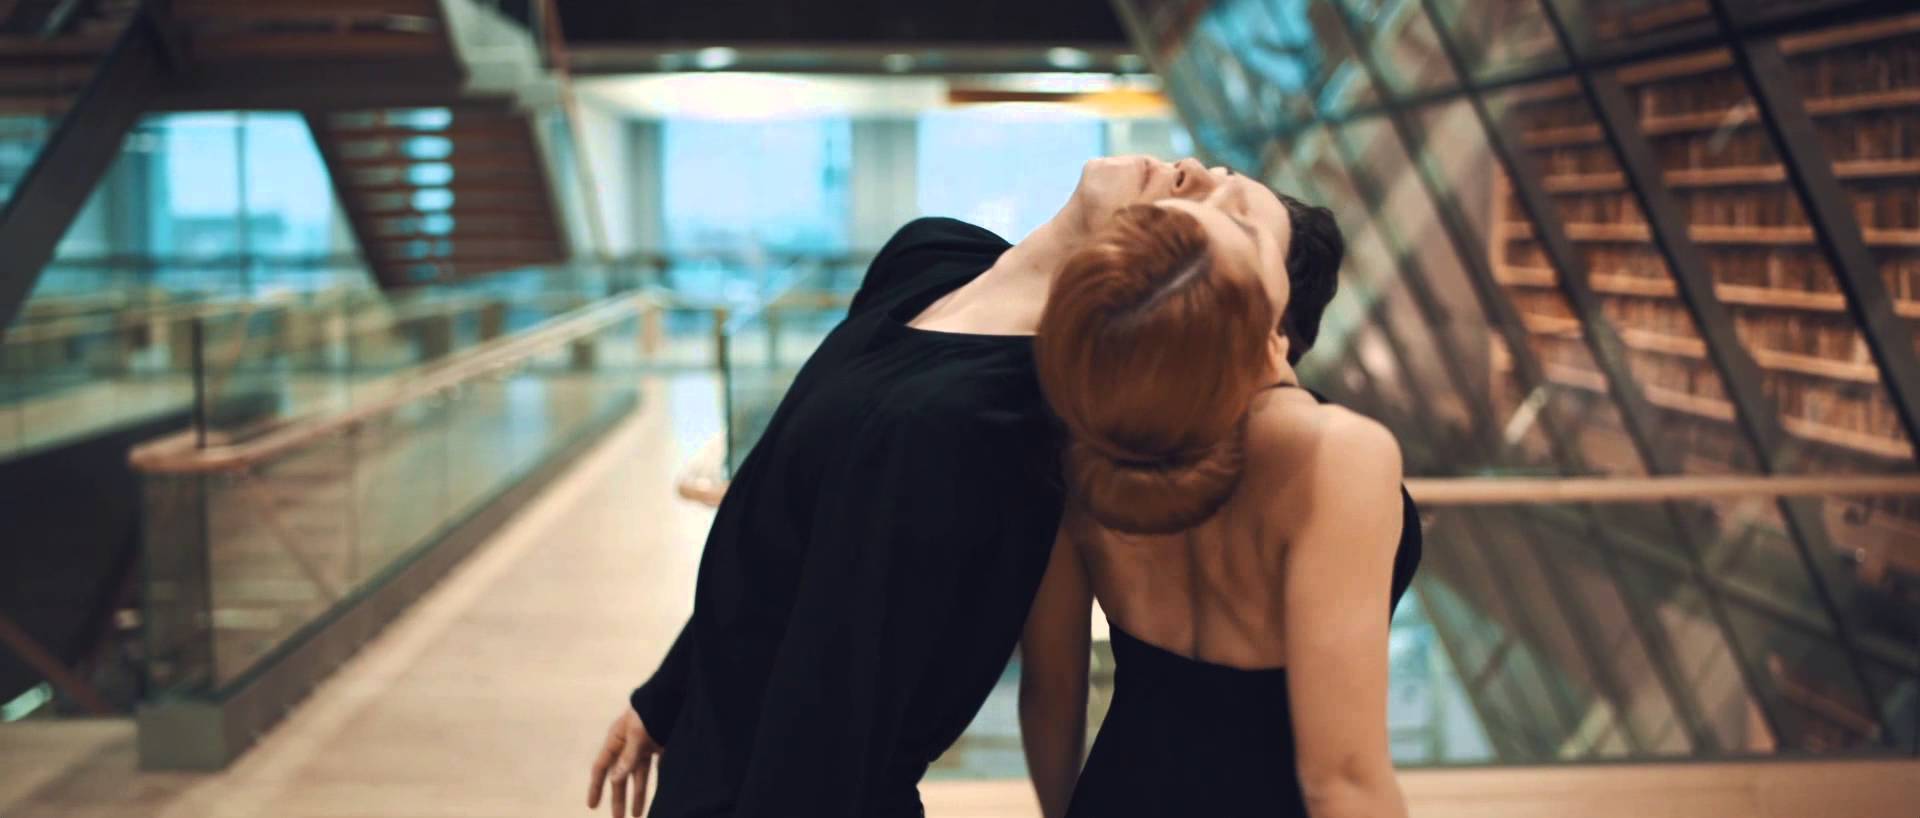 VIDEO: Mūsu “Gaismas pilī” uzņemts unikāls video! (Dance choreography ”Book of experience”)